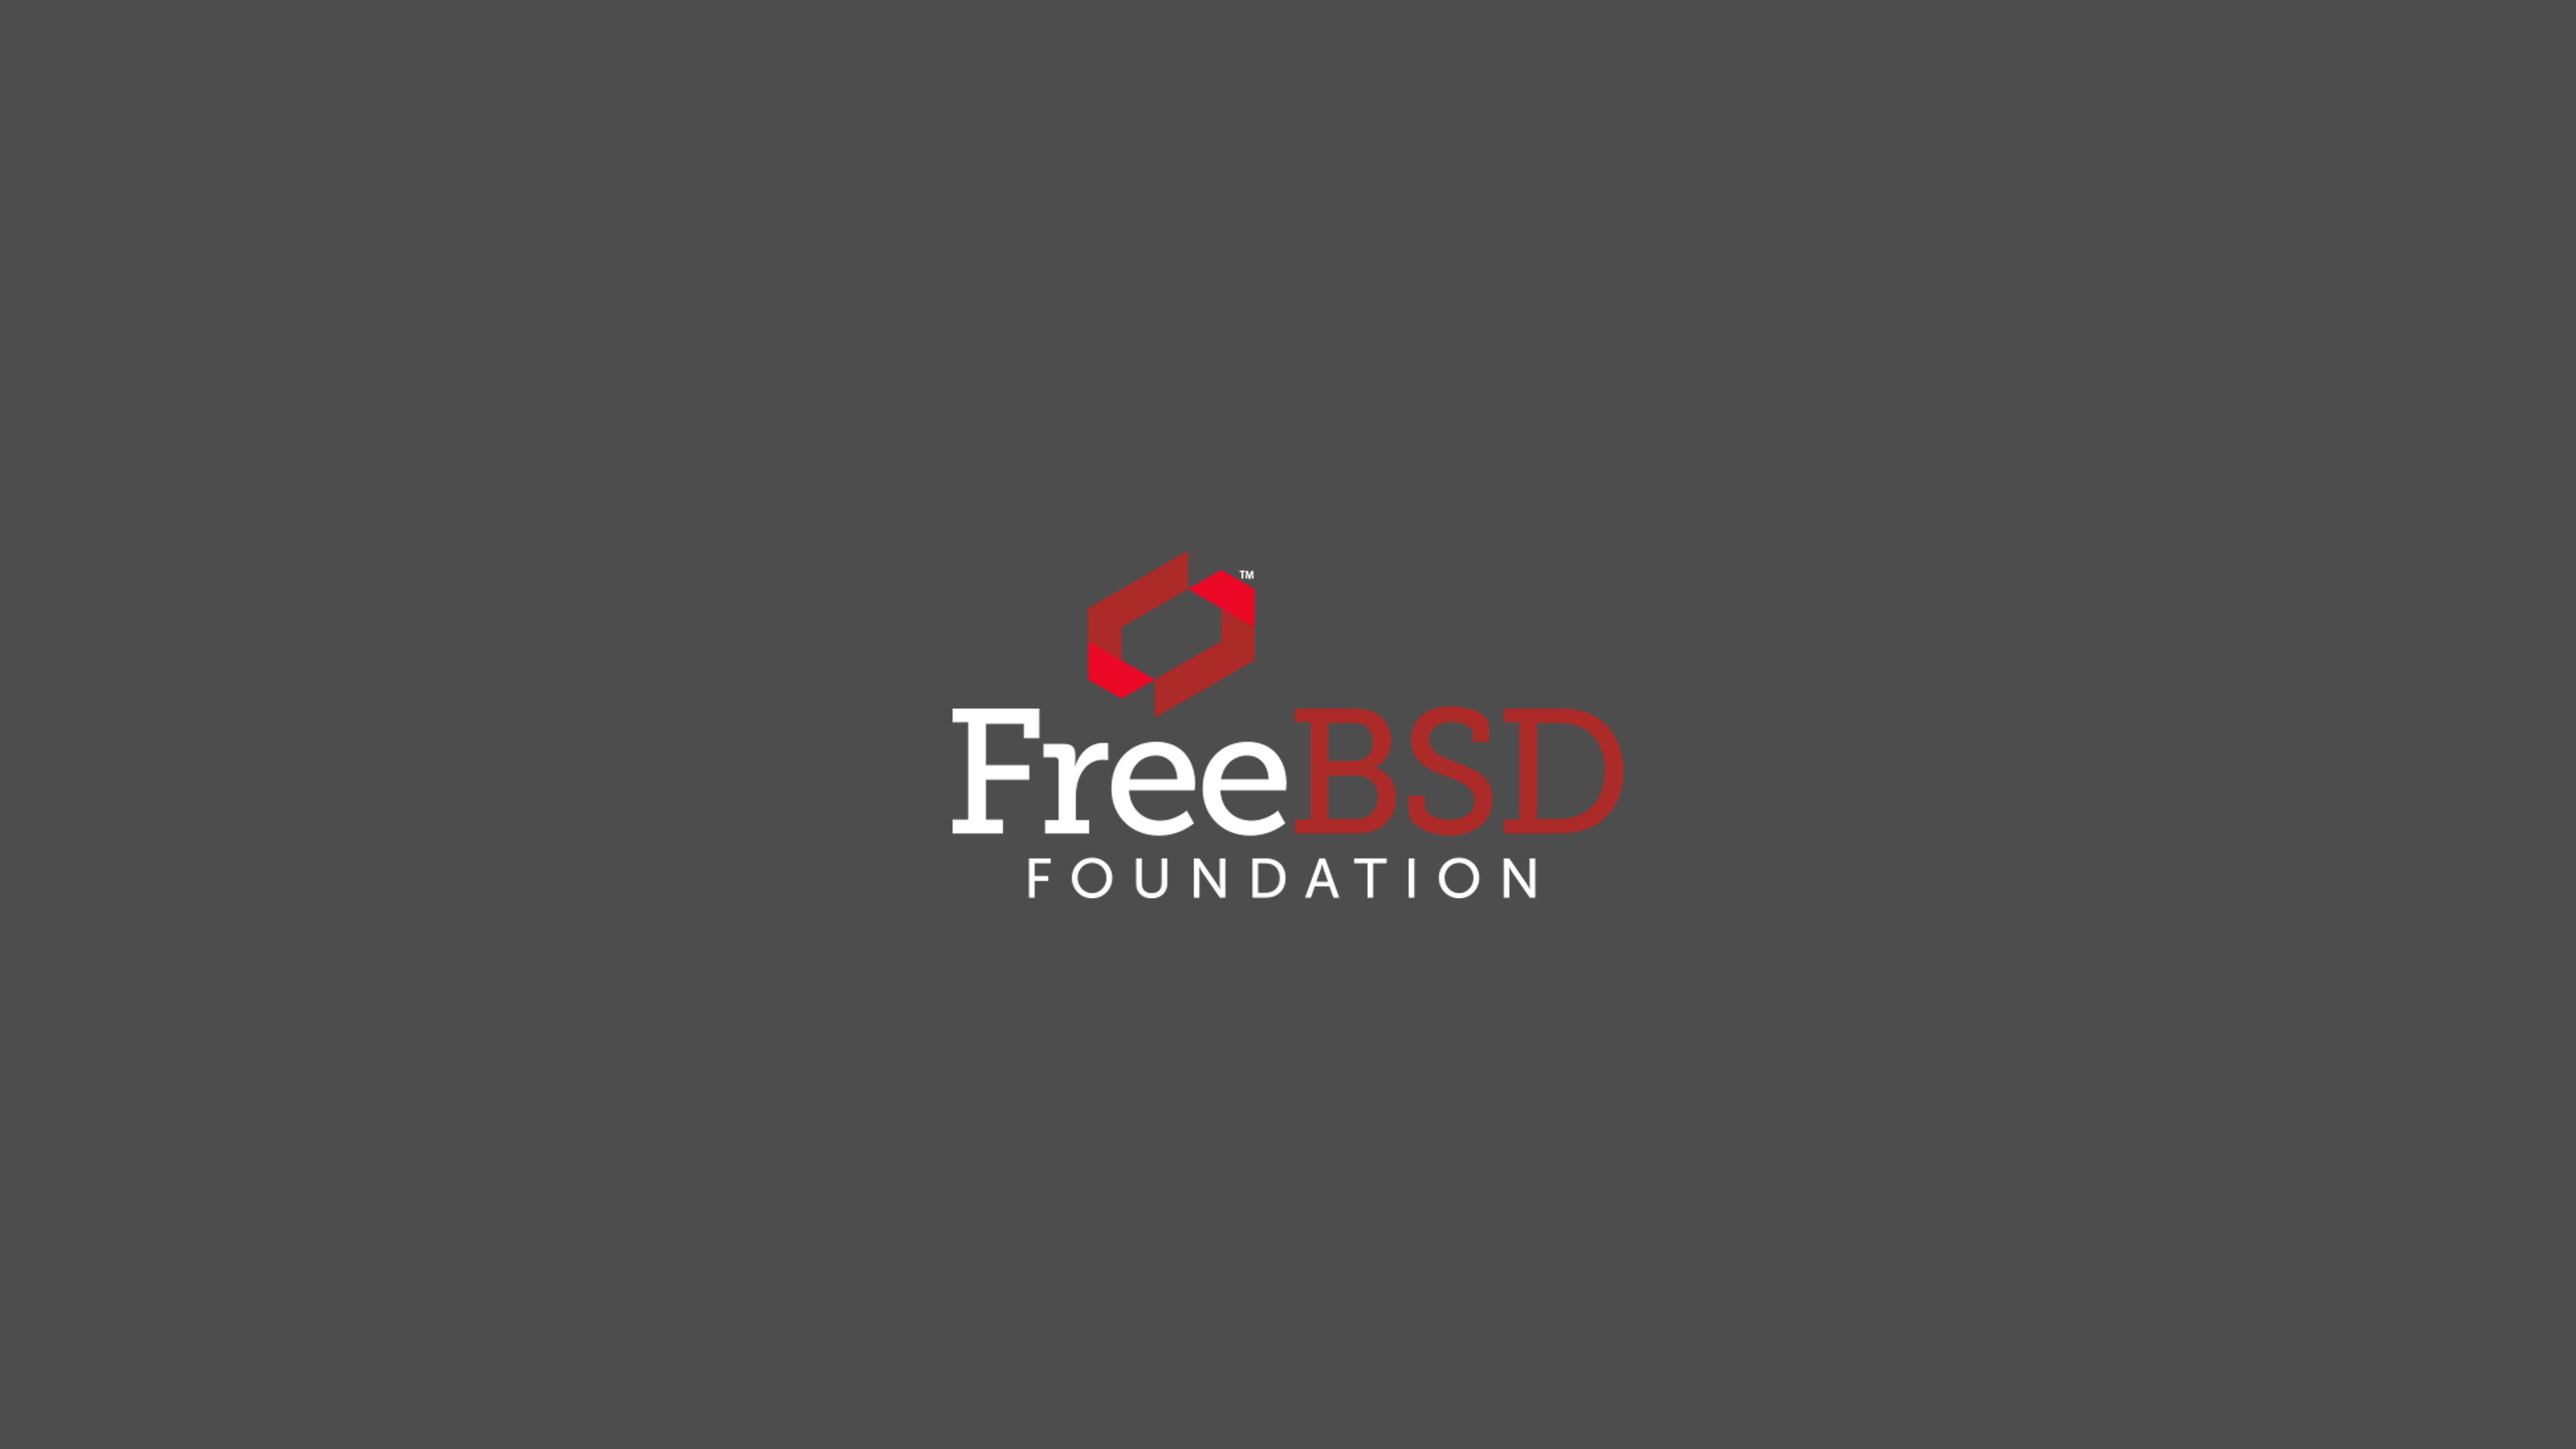 Bsd Foundations New Logo Wallpaper